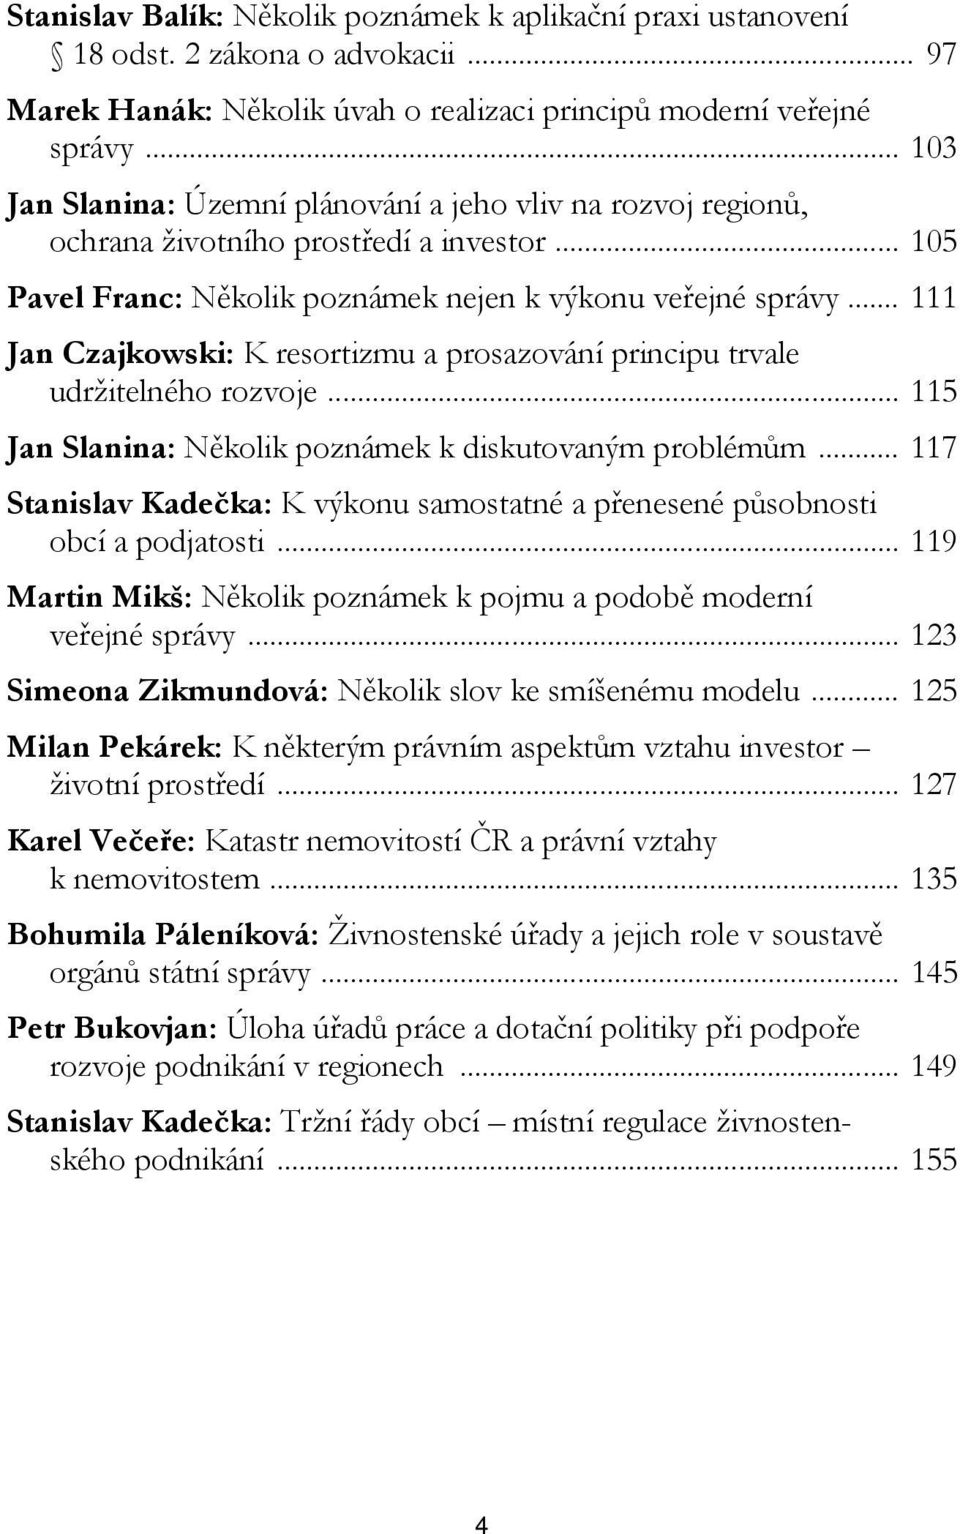 .. 111 Jan Czajkowski: K resortizmu a prosazování principu trvale udržitelného rozvoje... 115 Jan Slanina: Několik poznámek k diskutovaným problémům.